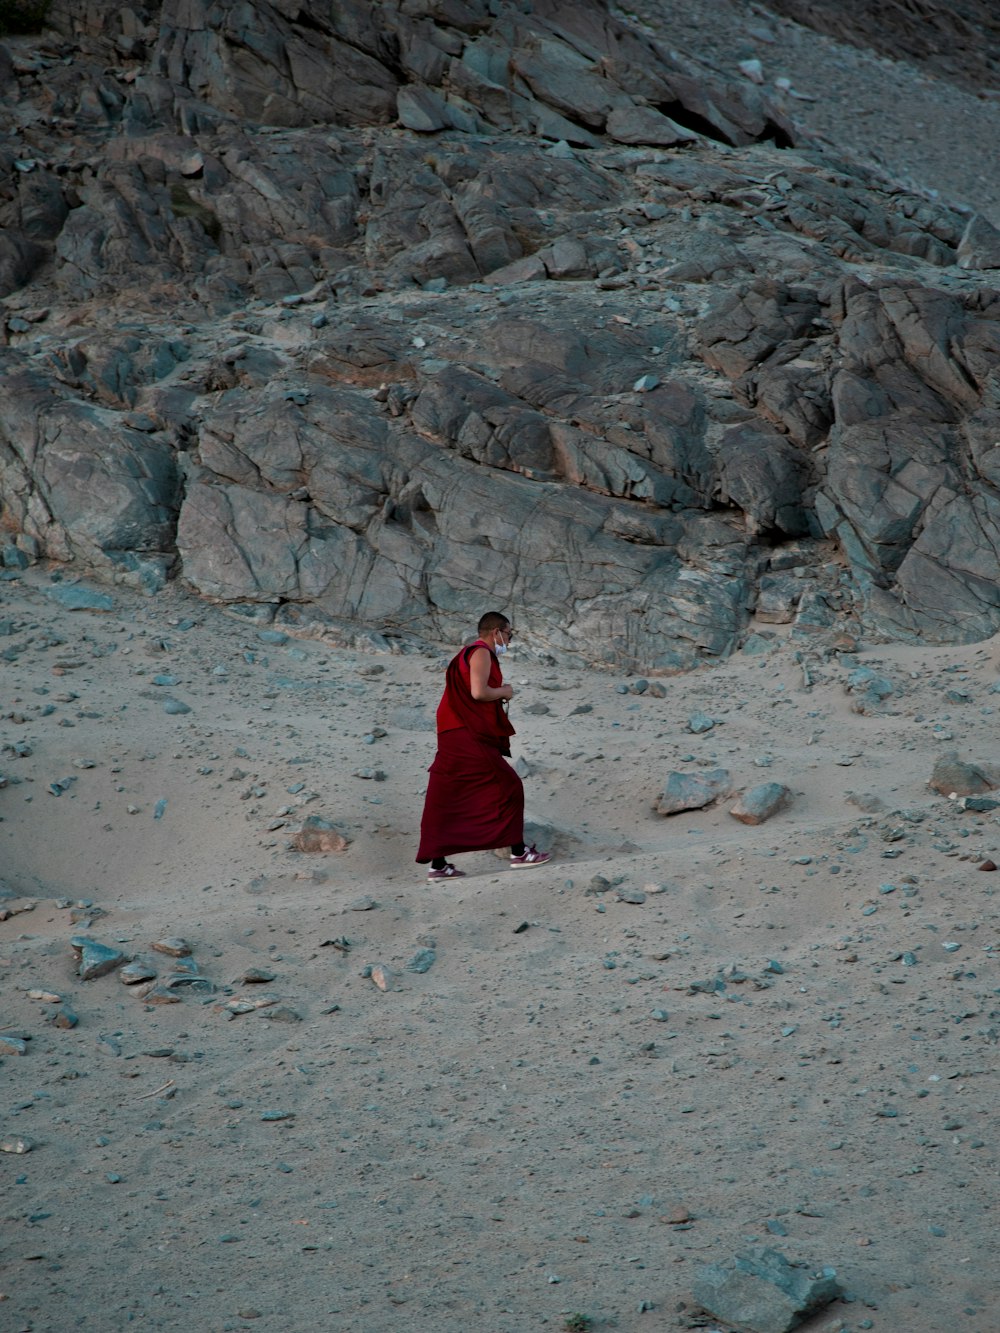 붉은 옷을 입은 승려가 모래 위에 서 있다